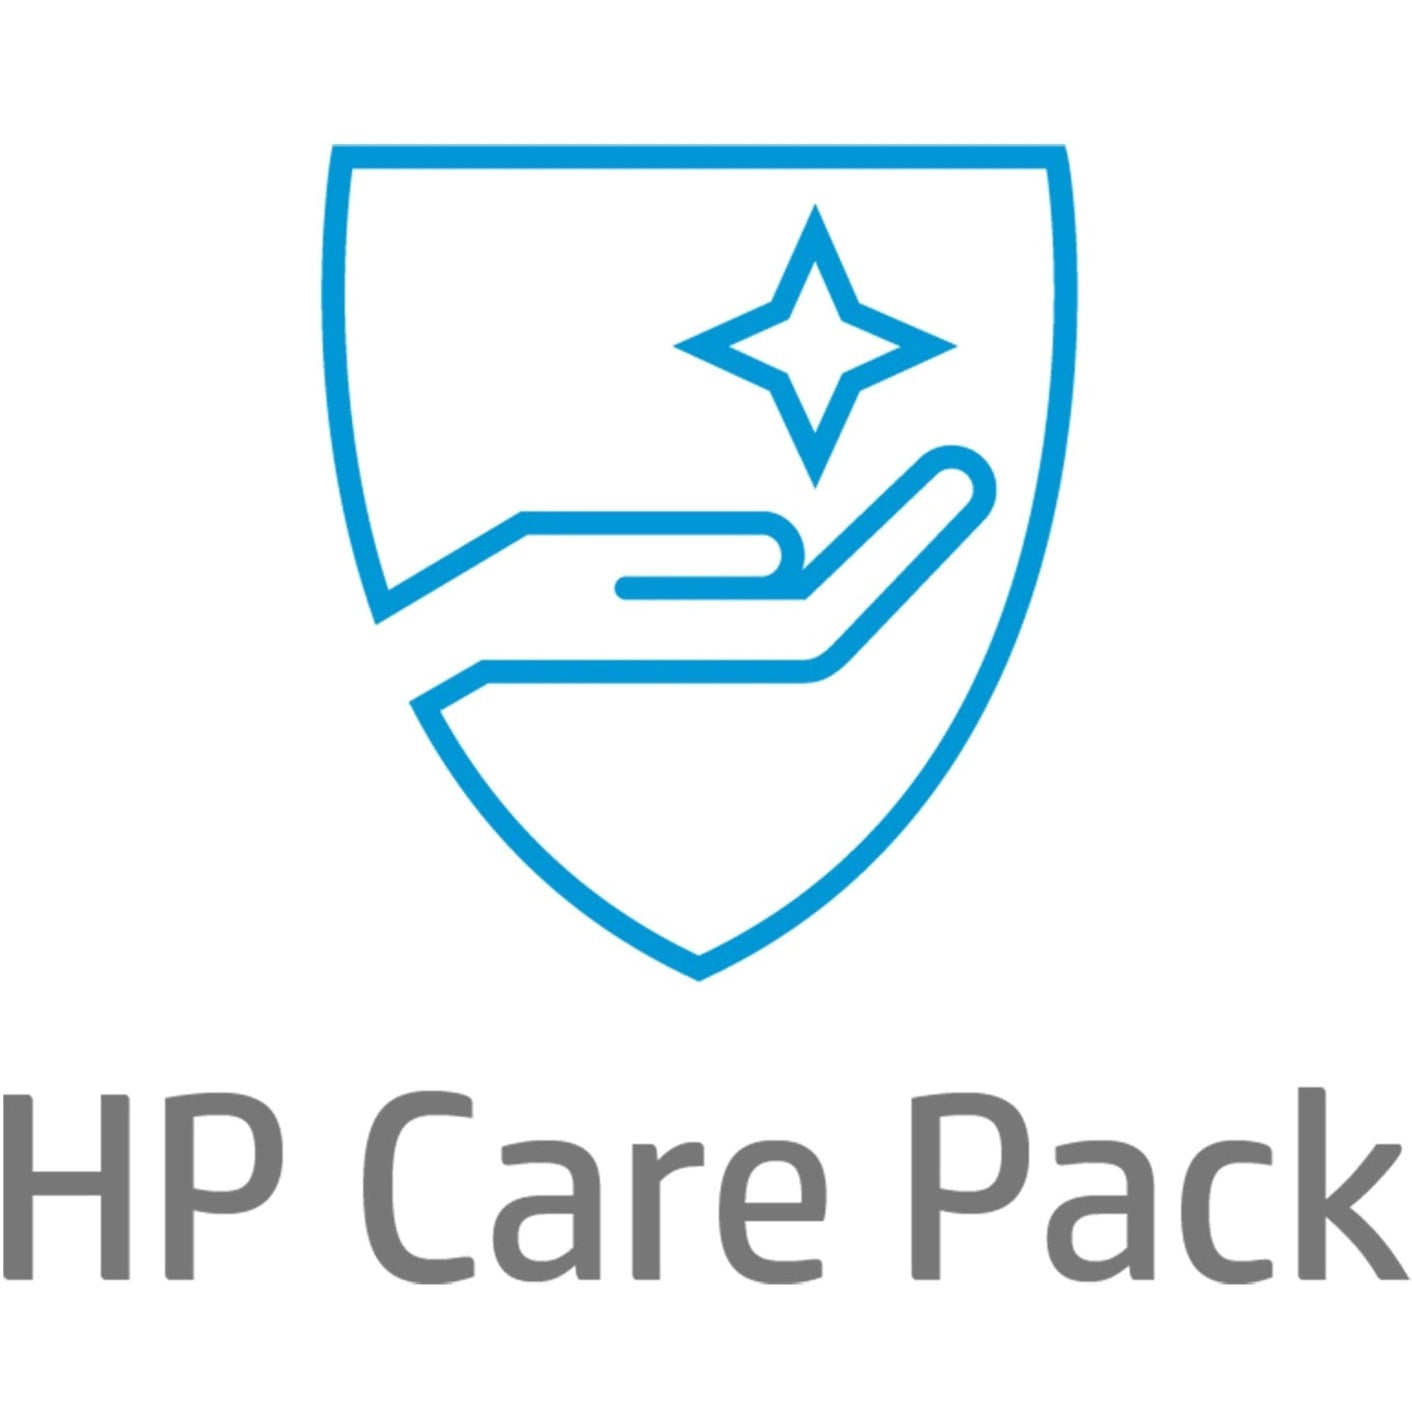 HP Care Pack - 1 Year - Service (U4822E)